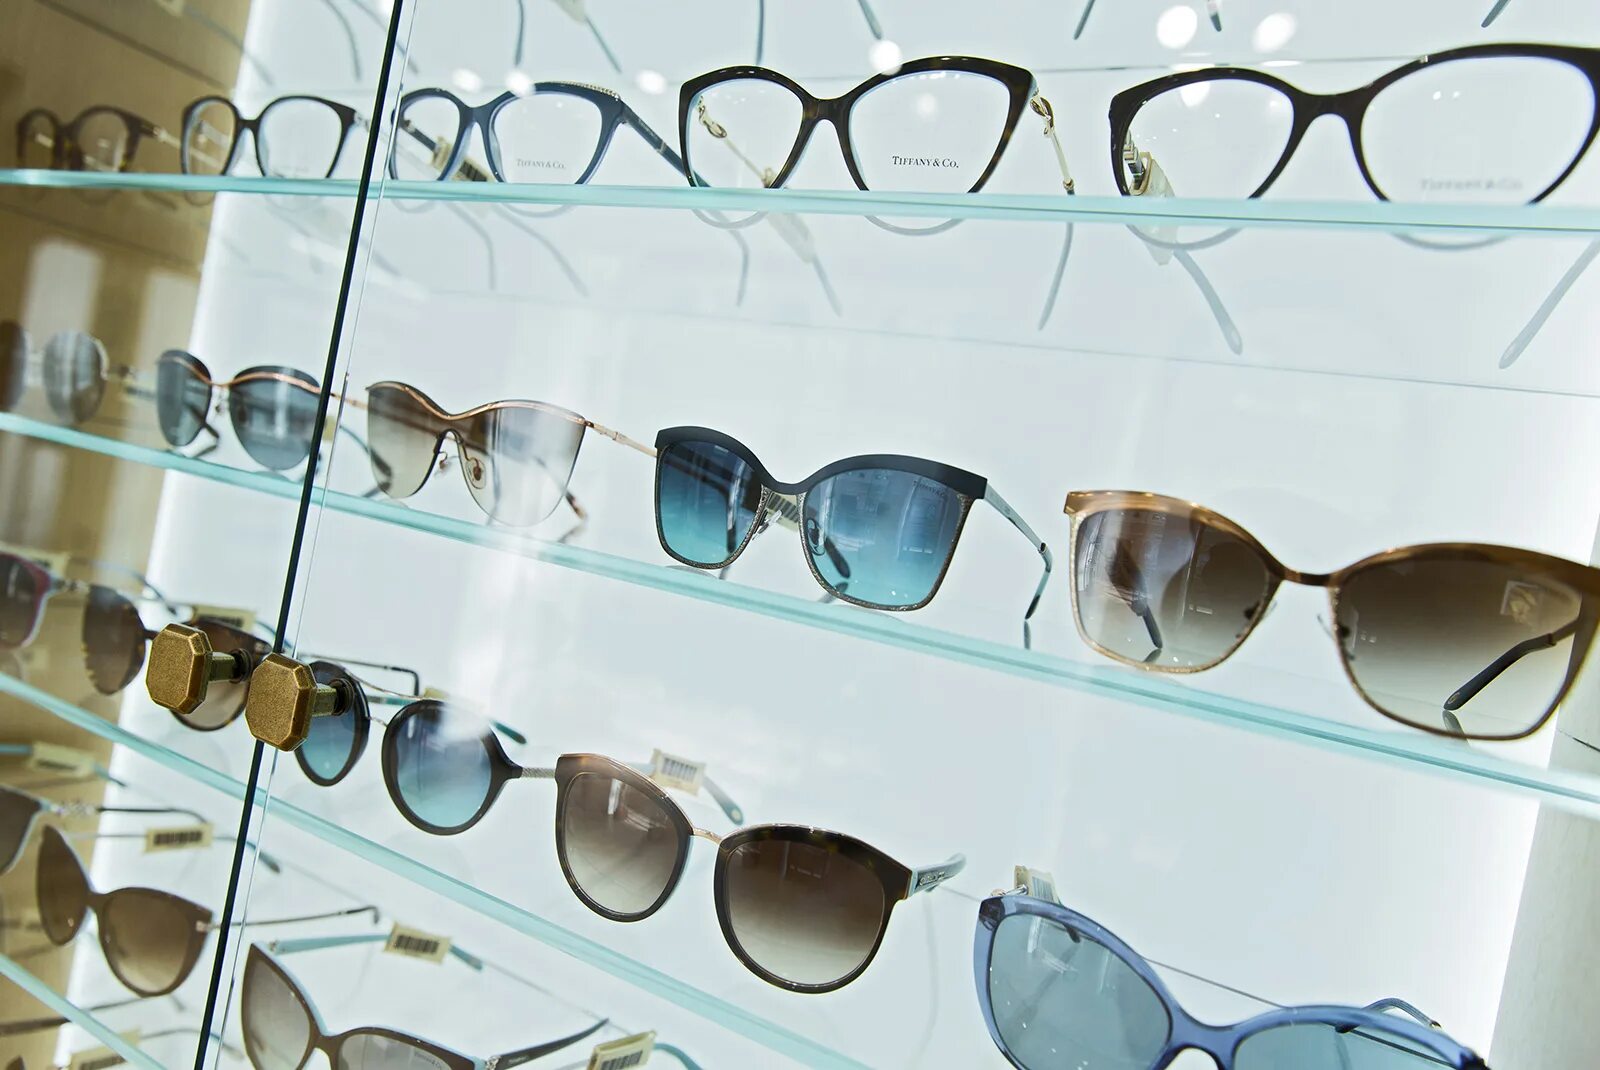 ГУМ очки магазин. Витрина для солнечных очков. Ассортимент солнцезащитных очков. Солнцезащитные очки на витрине.